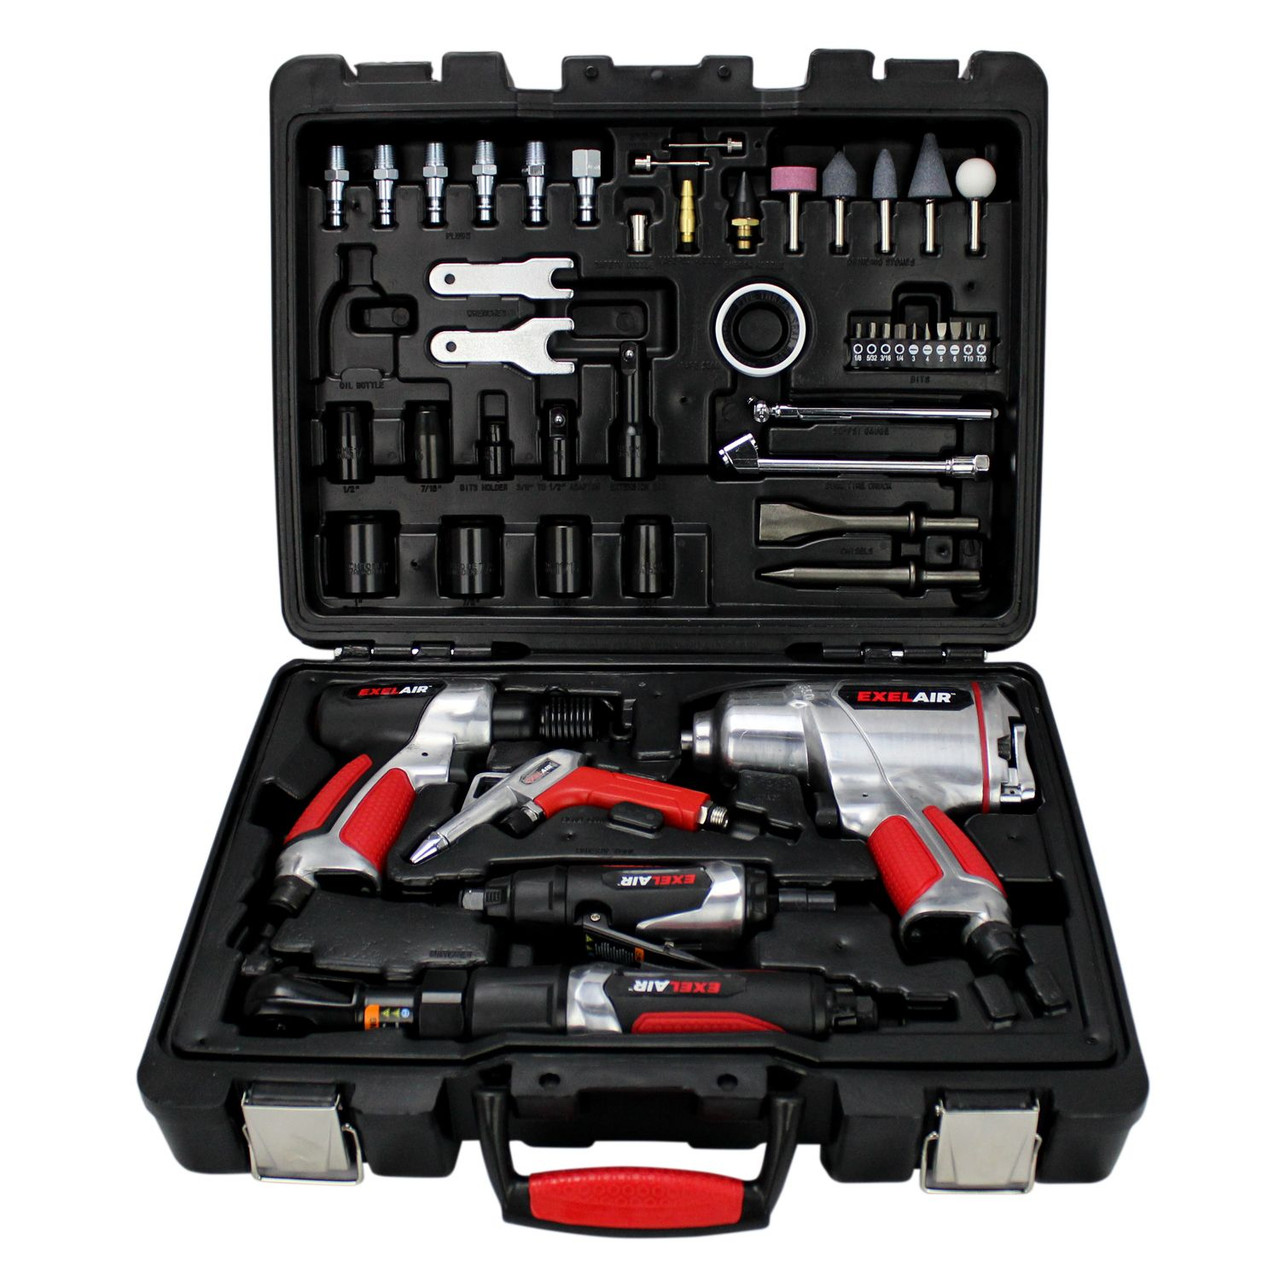 Milton? EXELAIR? 50-Pc. Pro Air Tool Accessory Kit